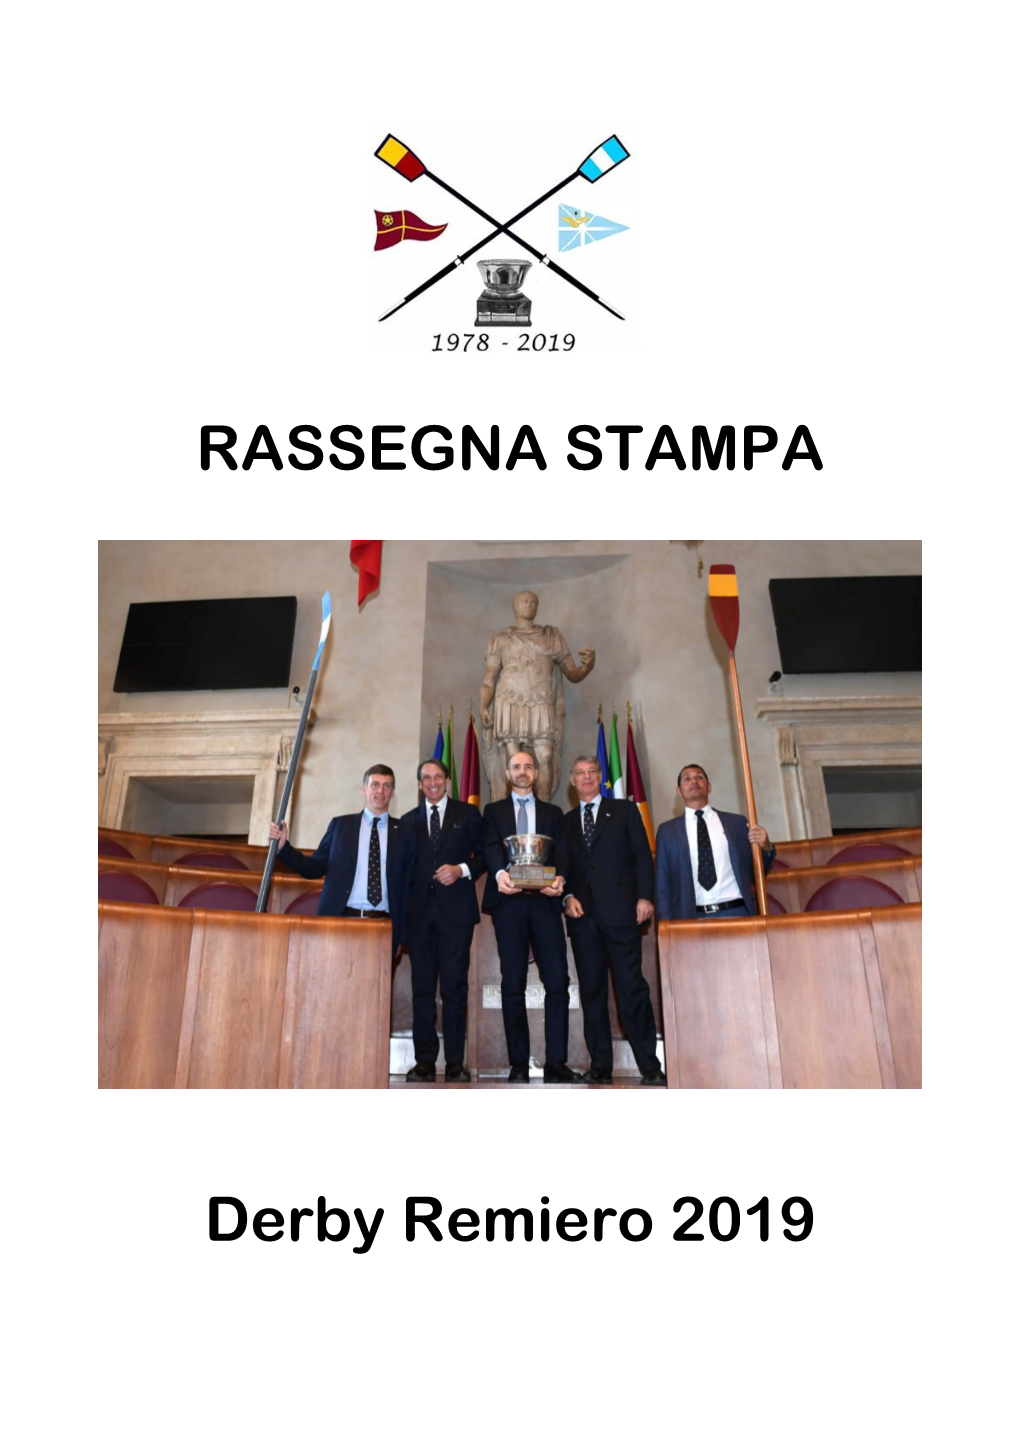 RASSEGNA STAMPA Derby Remiero 2019